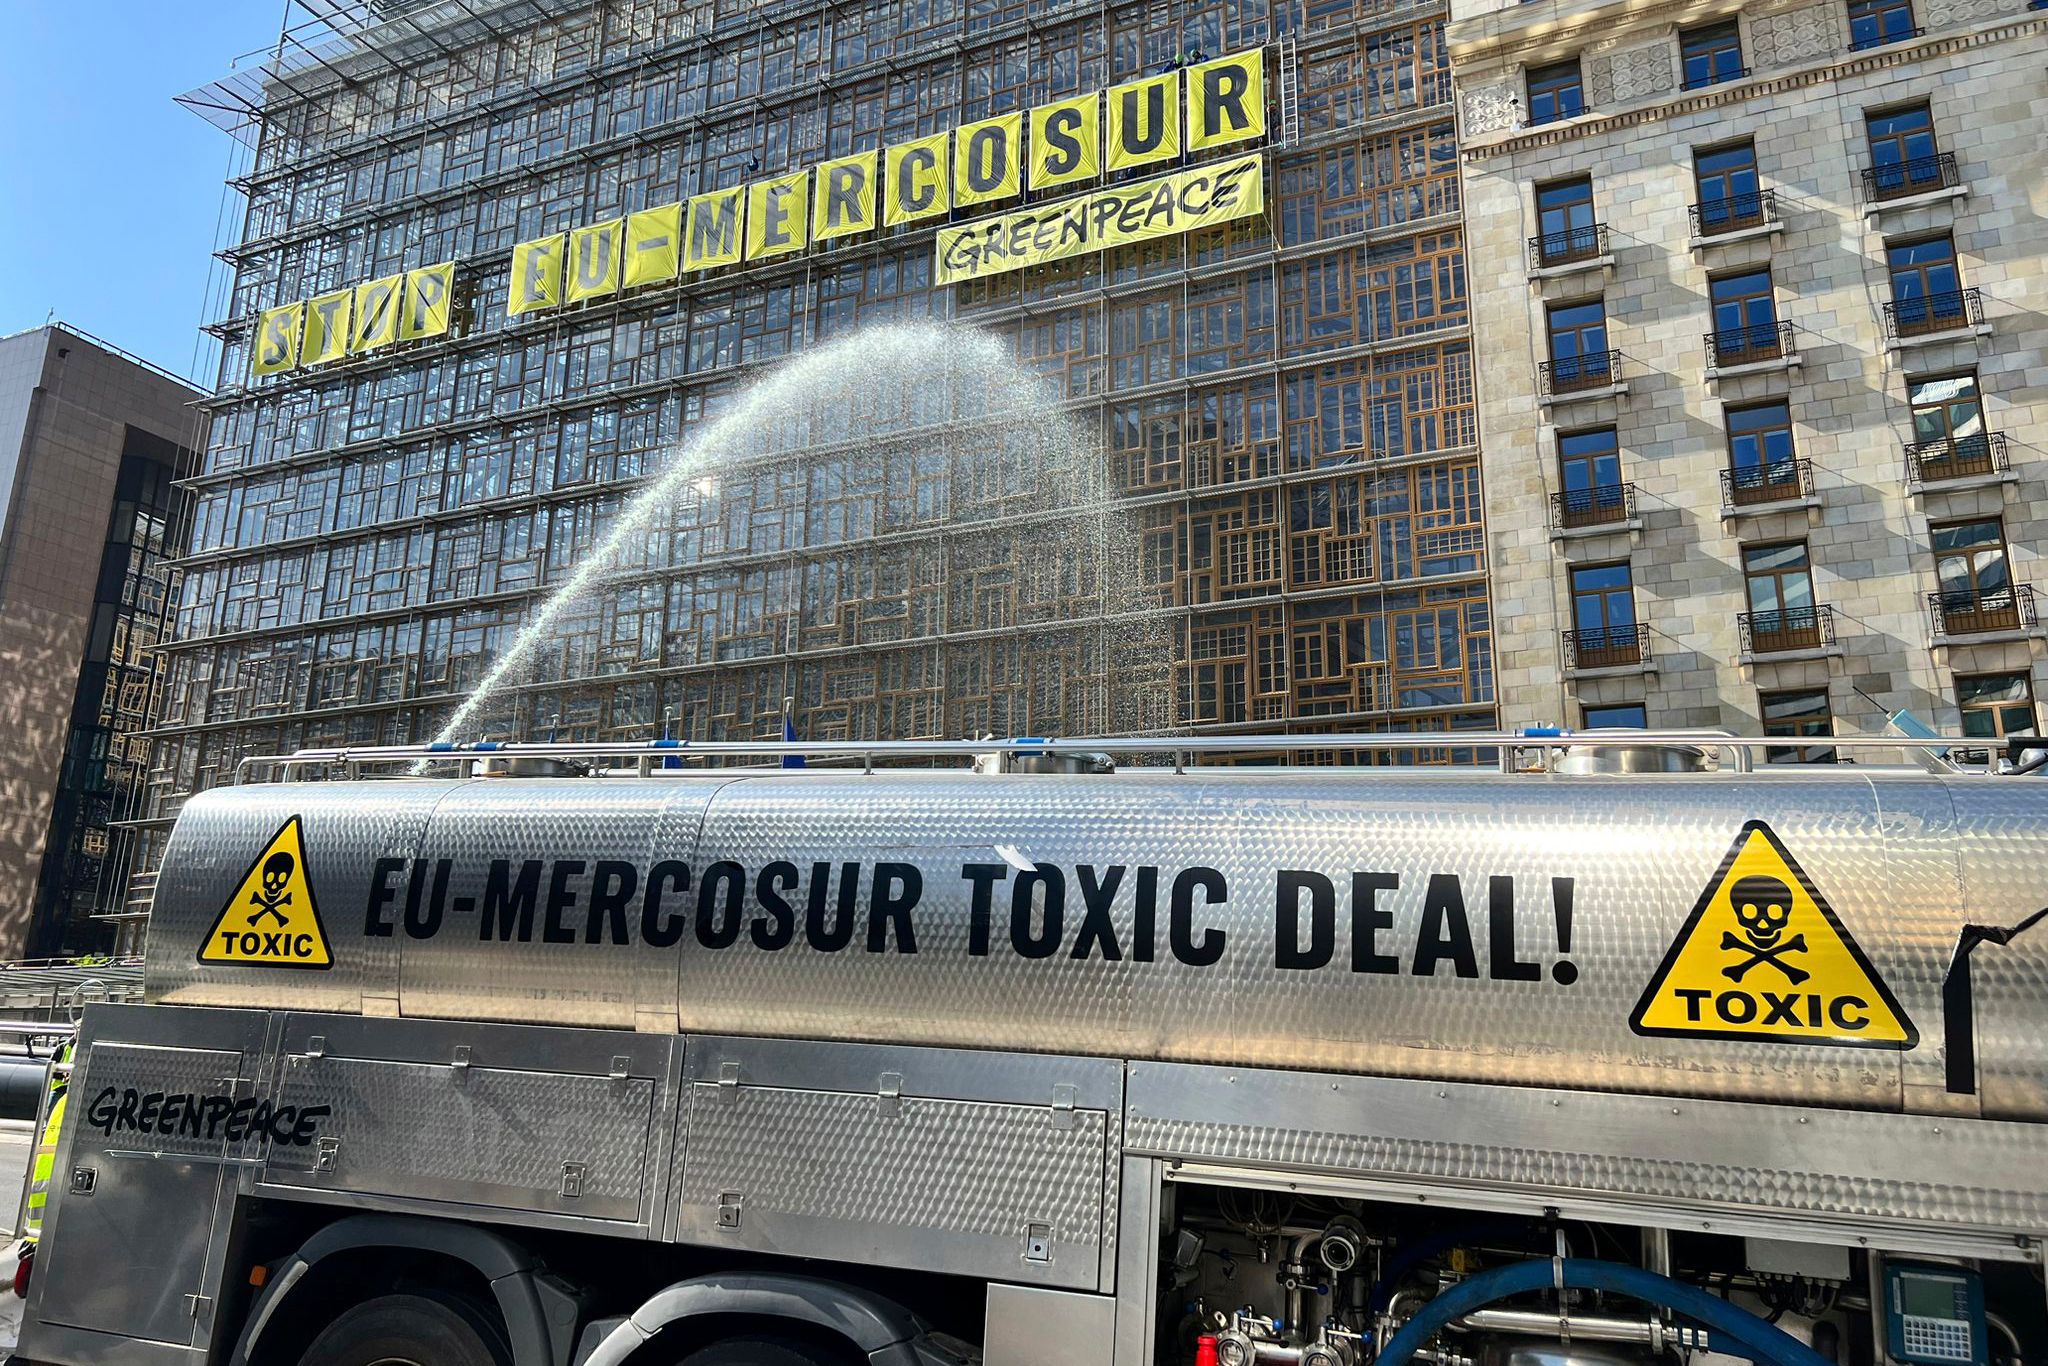 Die Umweltschützer von Greenpeace bringen ihren Unmut über das geplante EU-Mercosur-Abkommen zum Ausdruck.